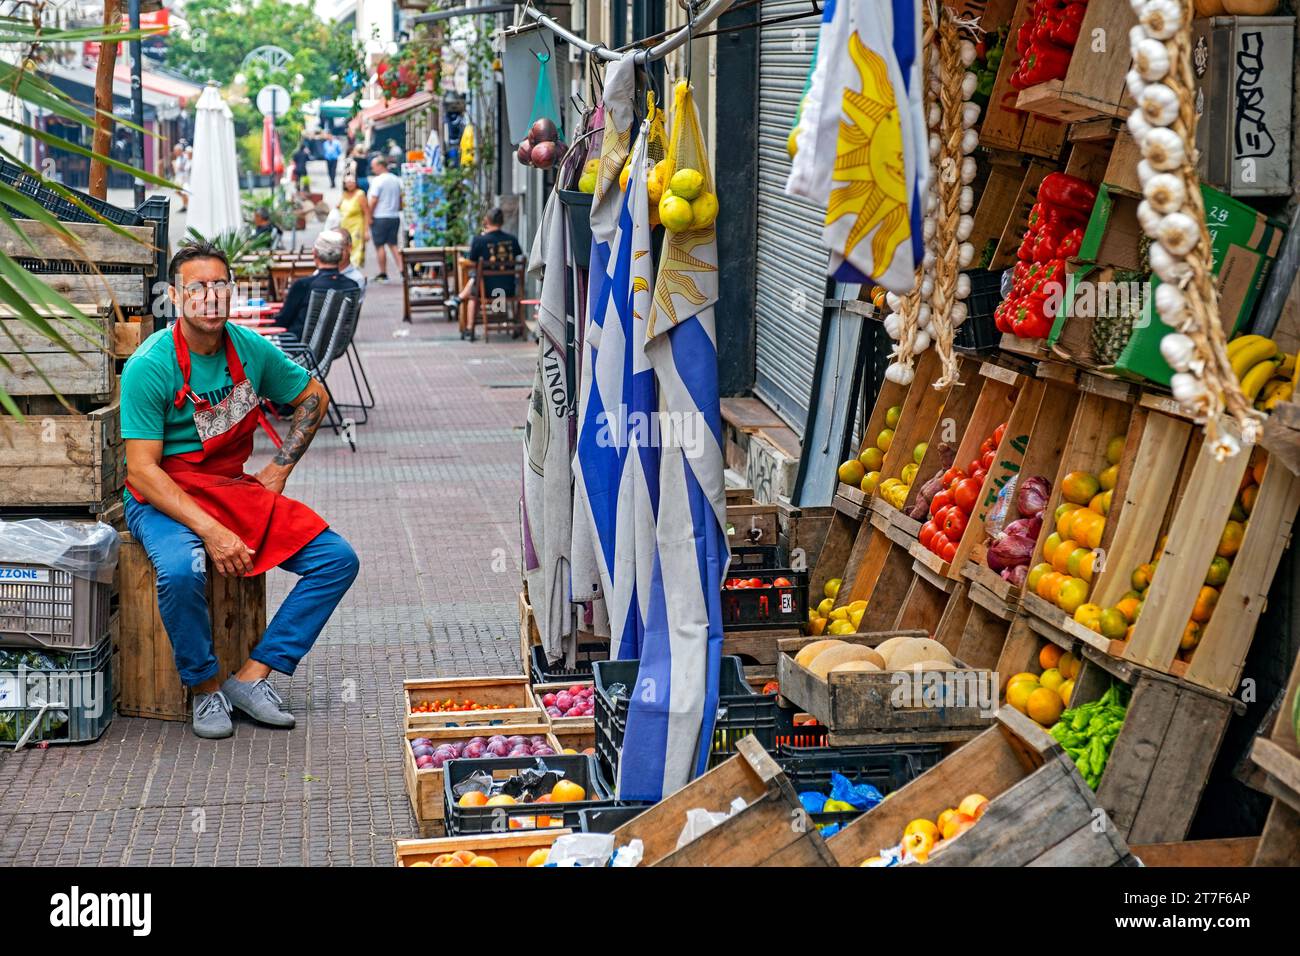 Vendeur de rue vendant des fruits dans la Ciudad Vieja / Vieille ville, quartier historique de la capitale Montevideo, Uruguay, Amérique du Sud Banque D'Images